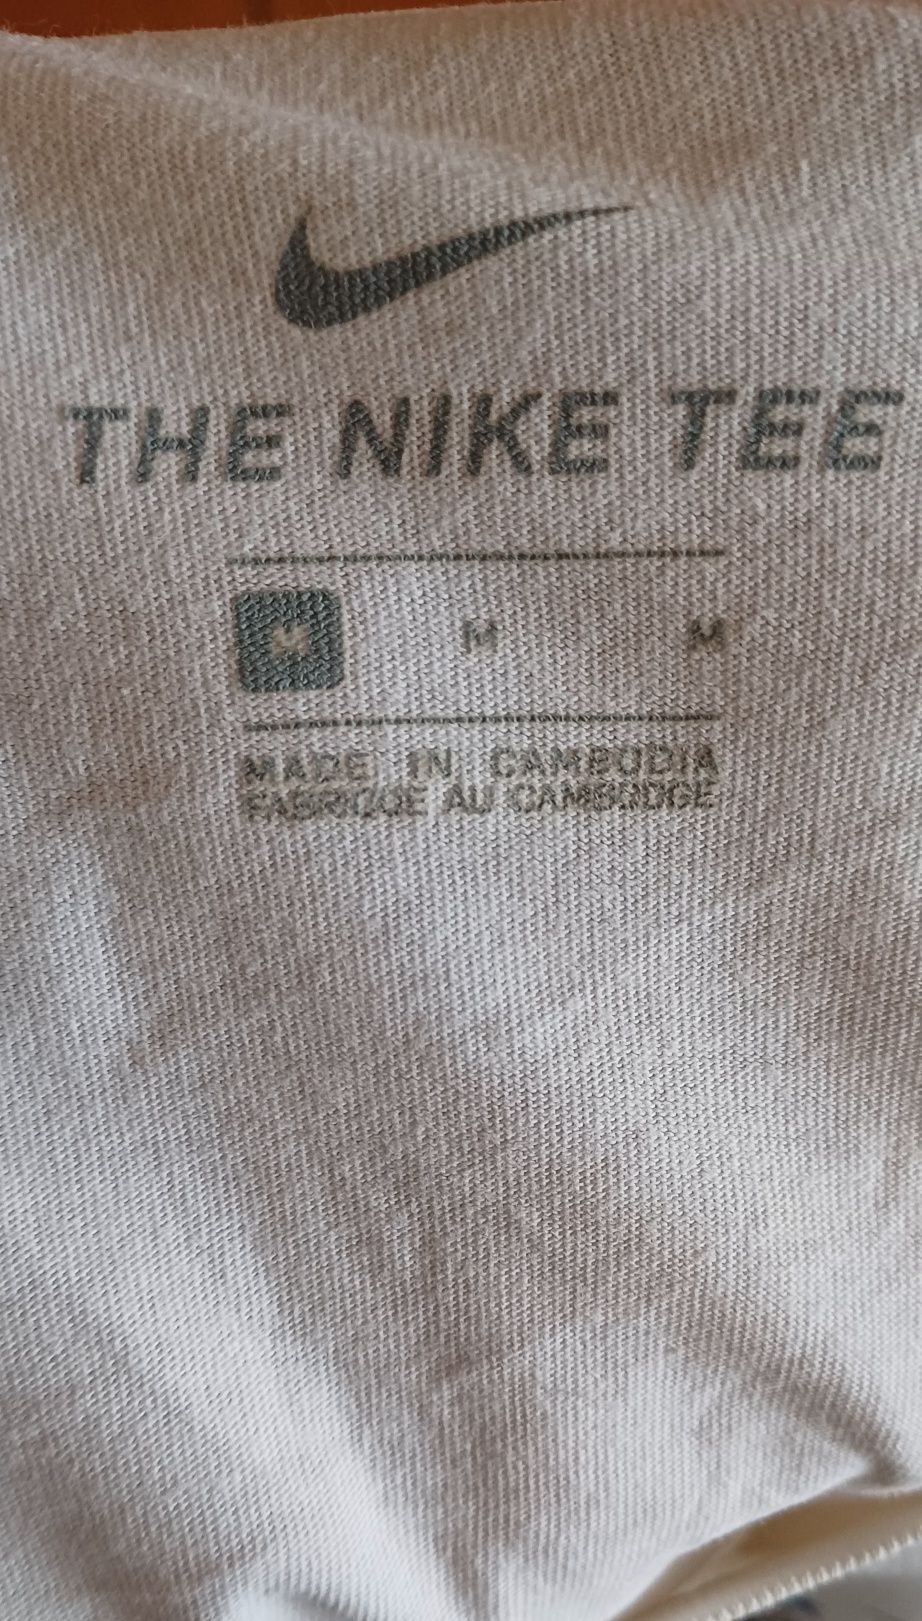 Тениска Nike M размер